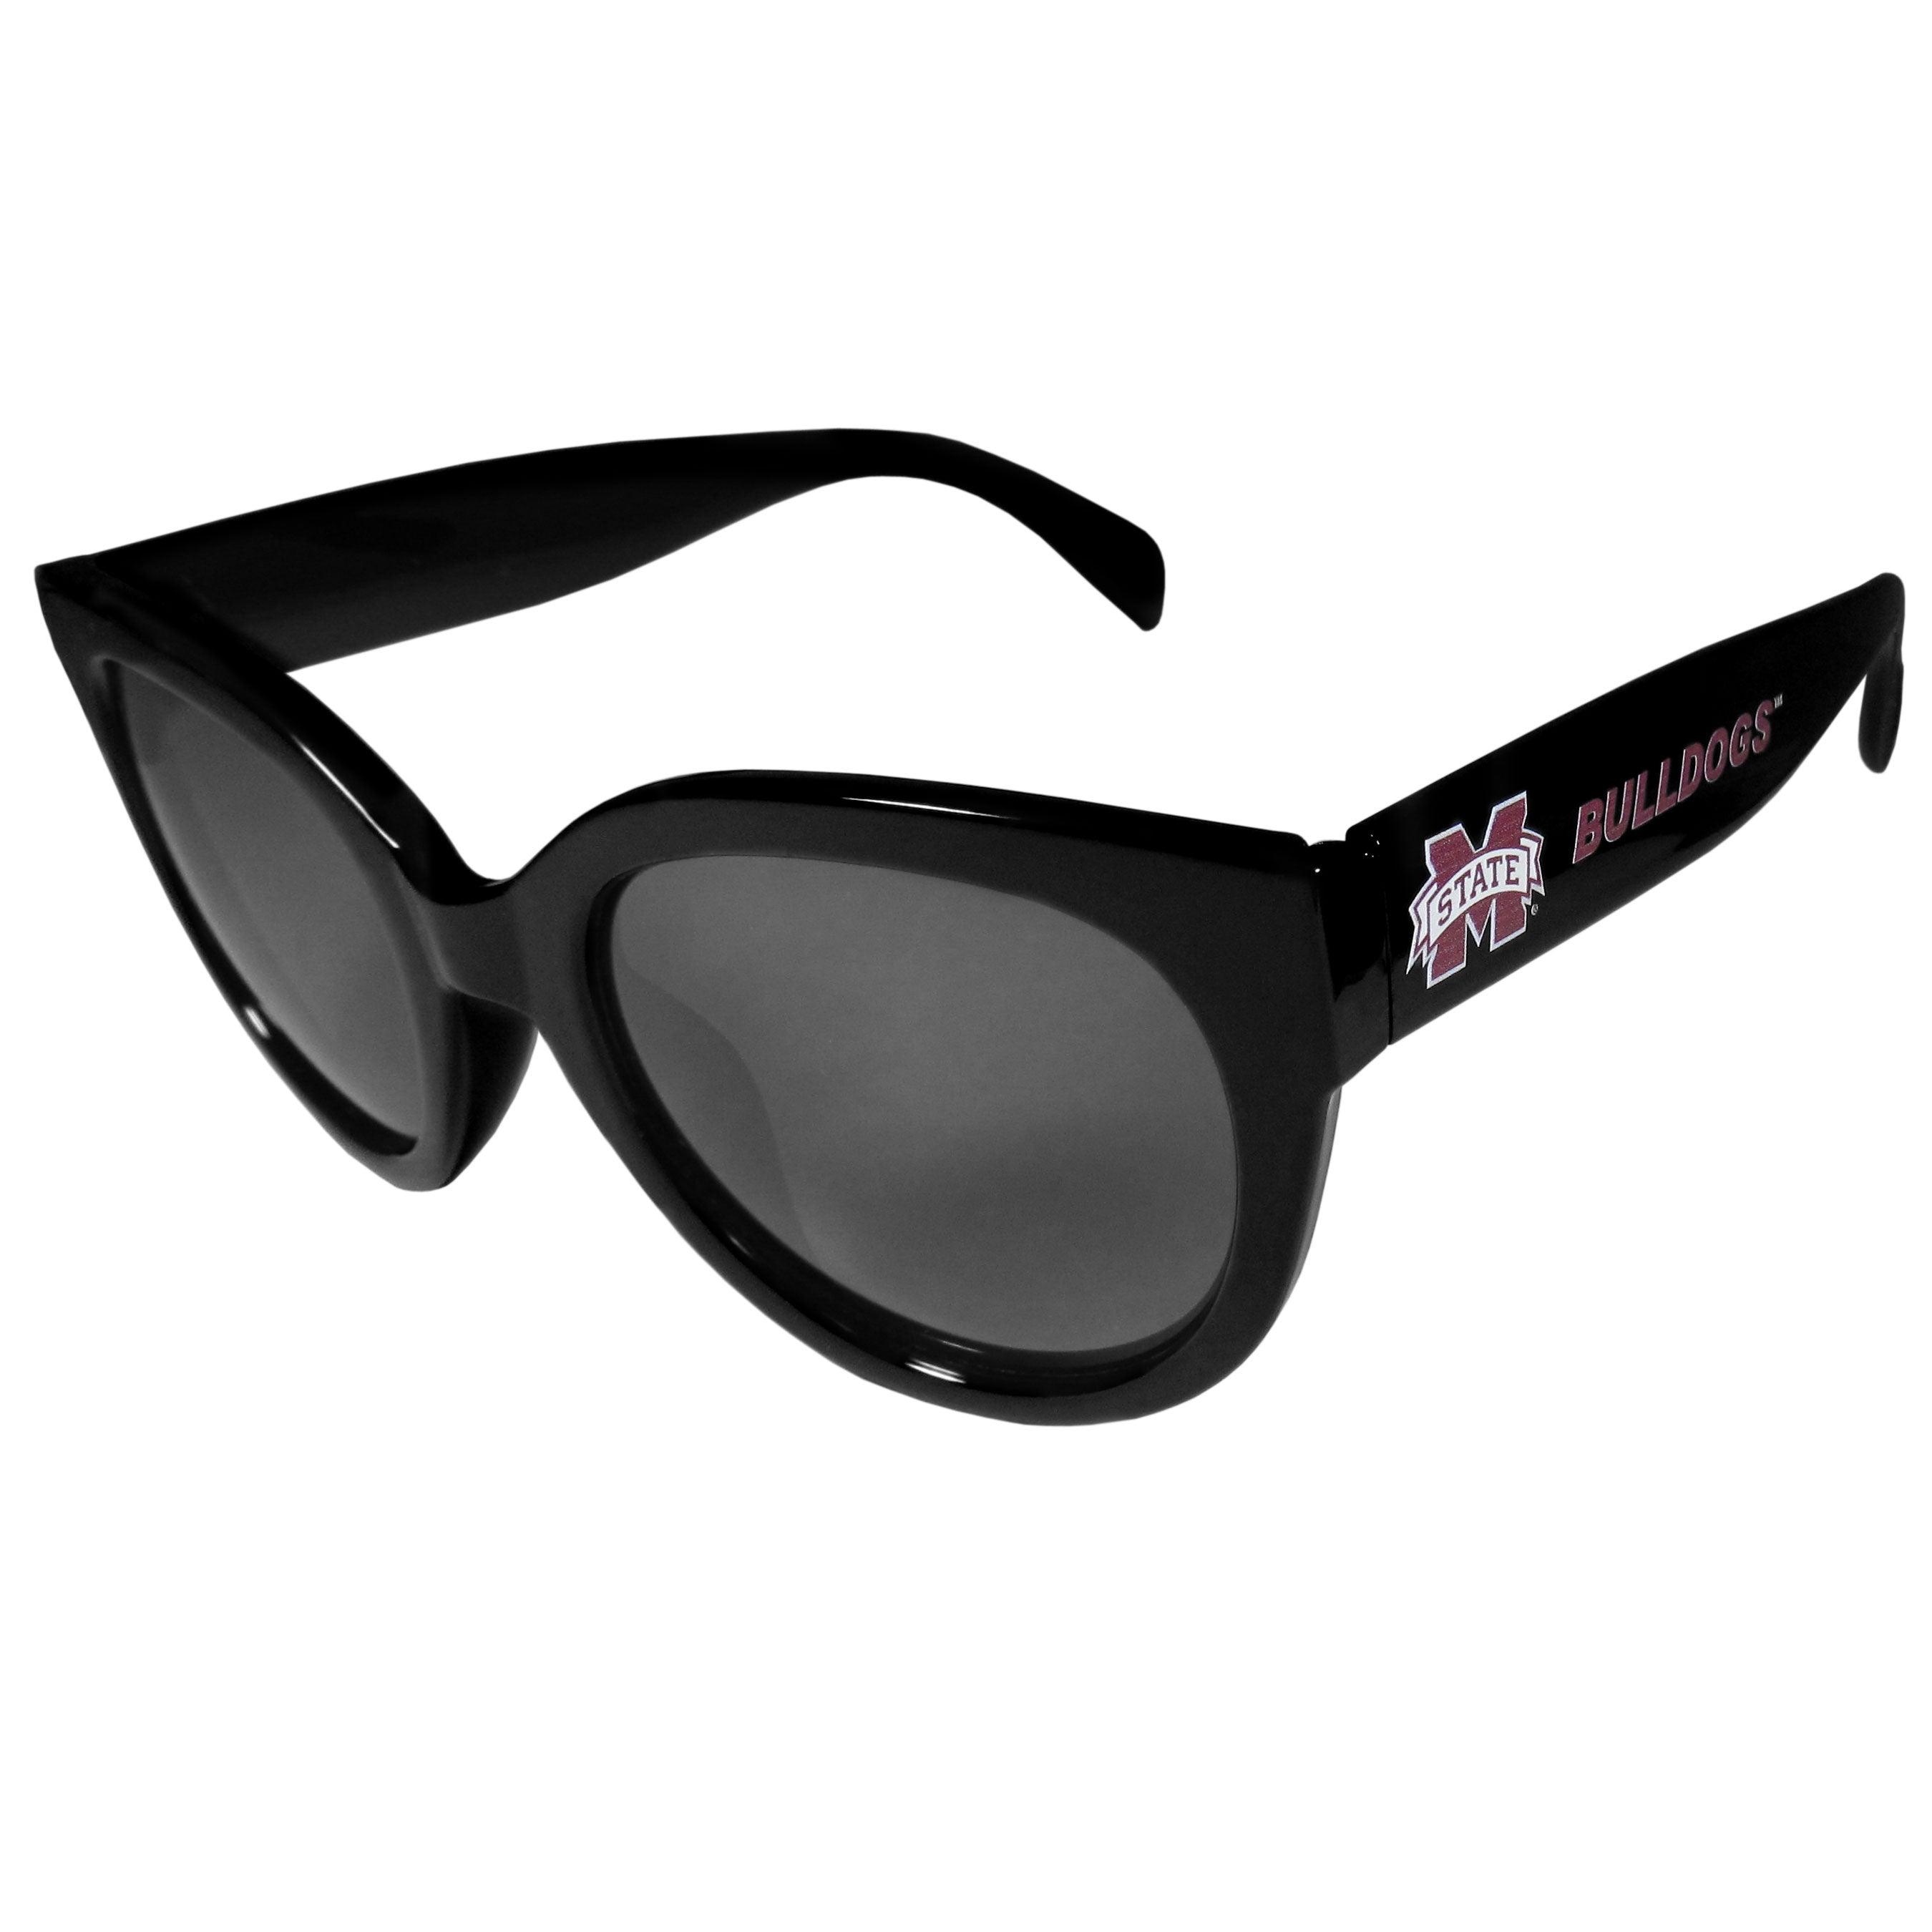 Mississippi St. Bulldogs Women's Sunglasses - Flyclothing LLC